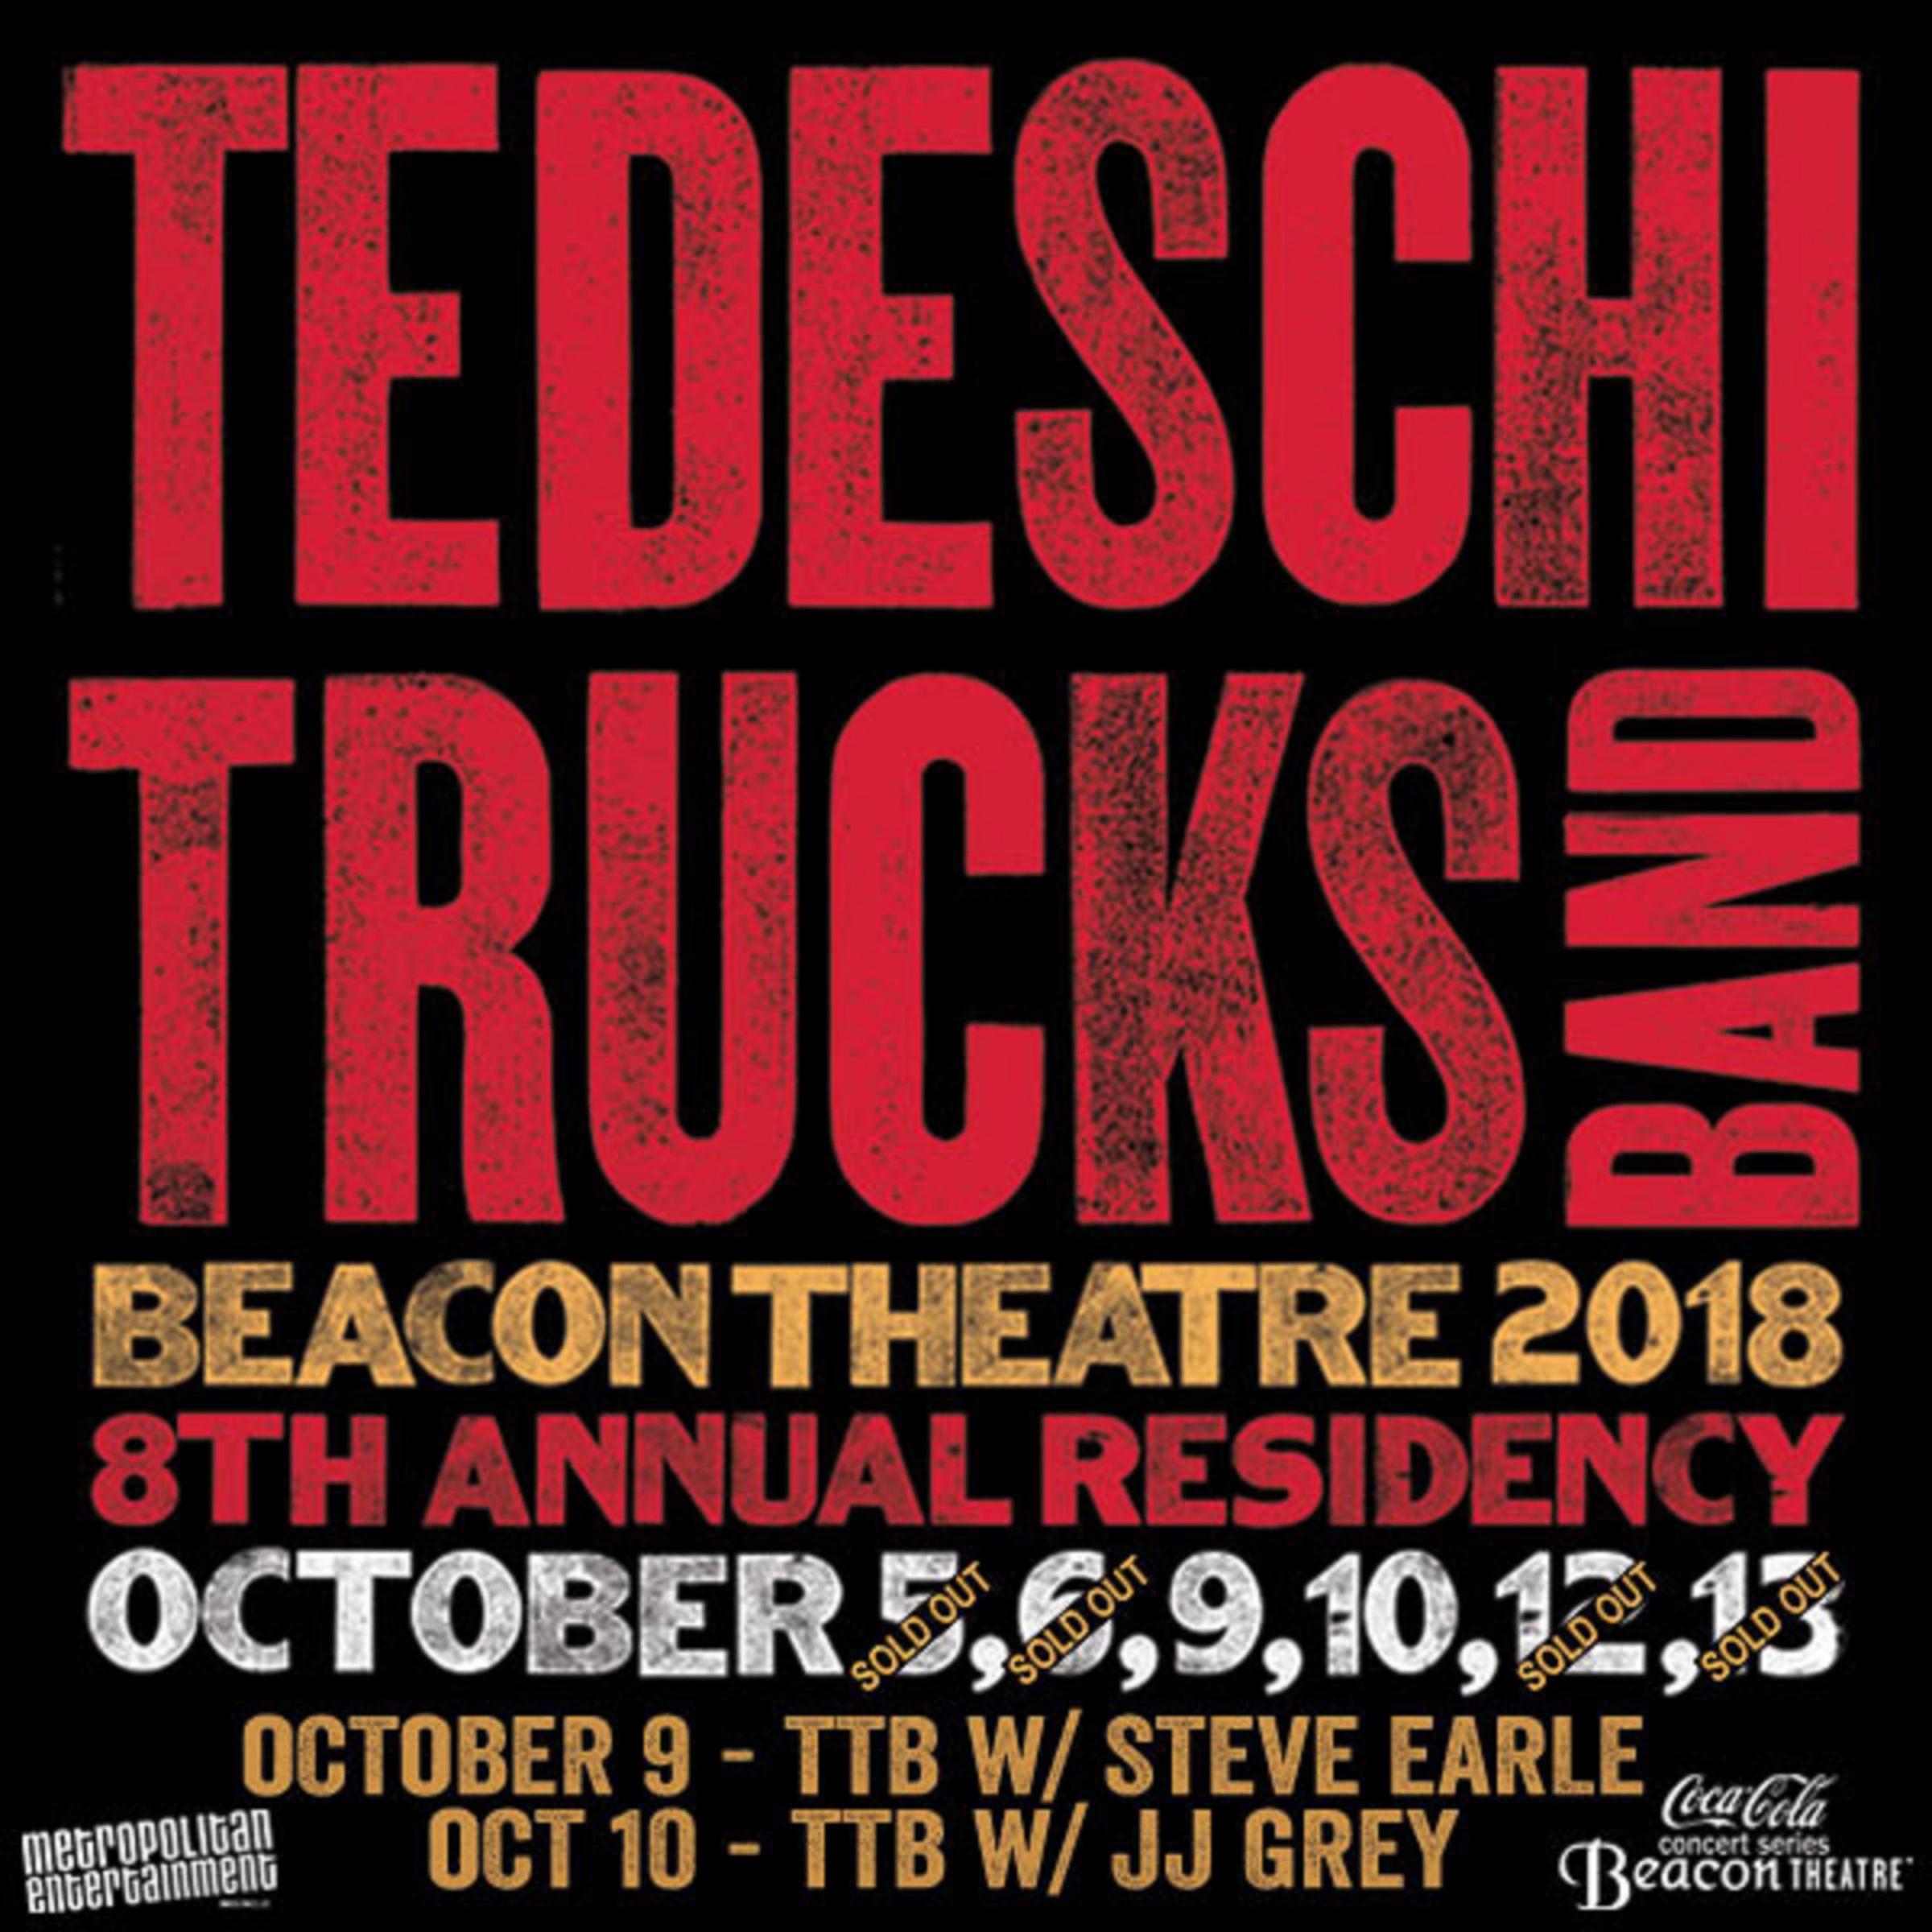 Tedeschi Trucks Band Beacon Theatre October 5 GeloManias